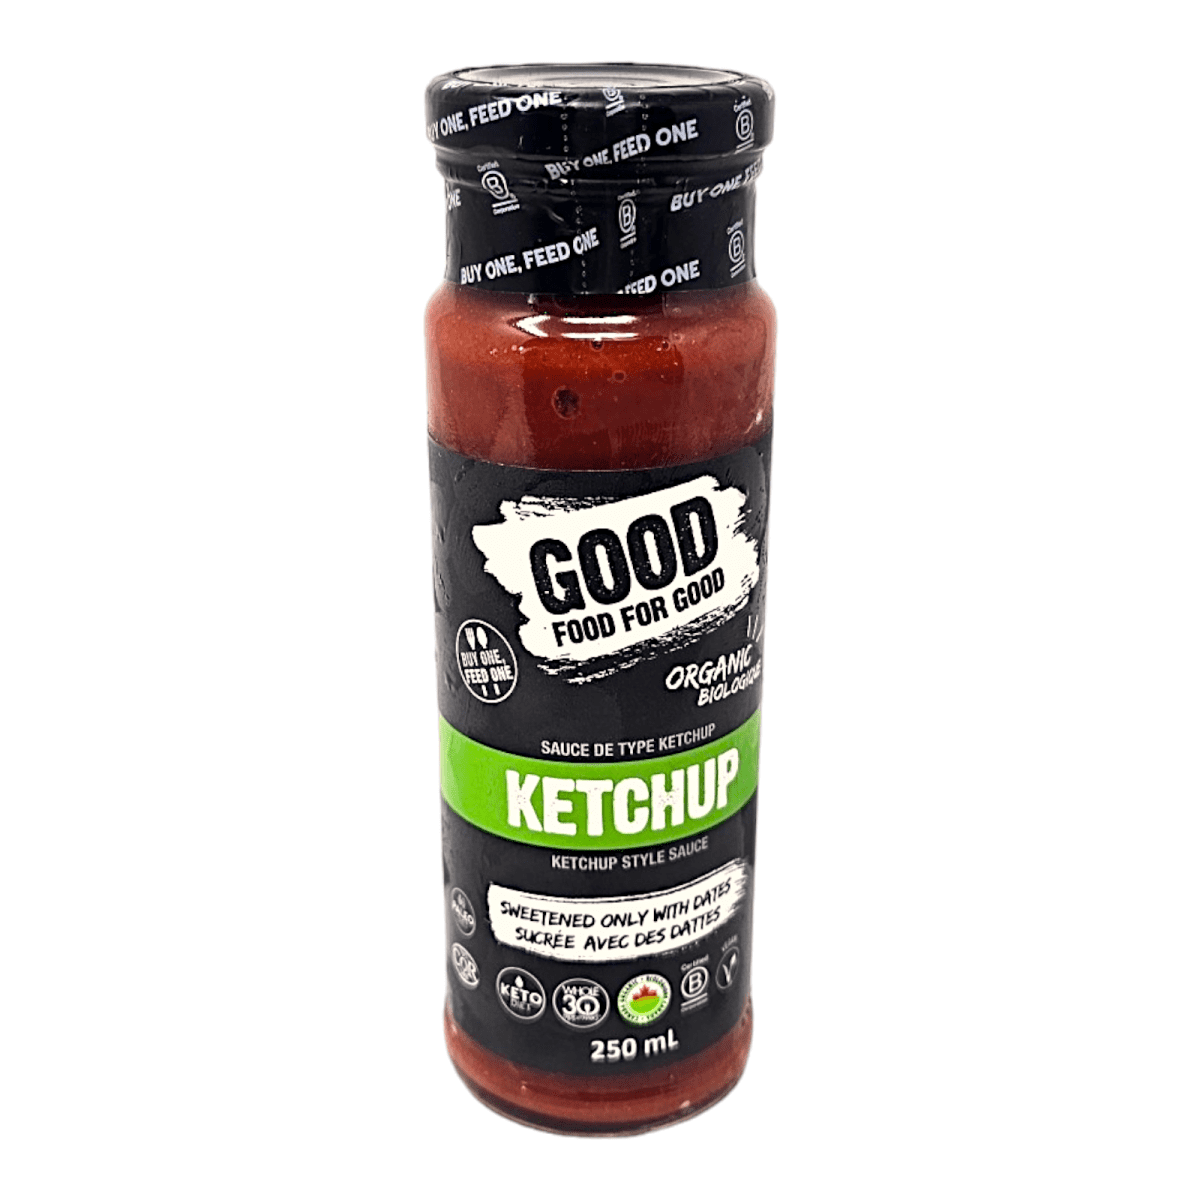 Good food for good Ketchup (250ml)